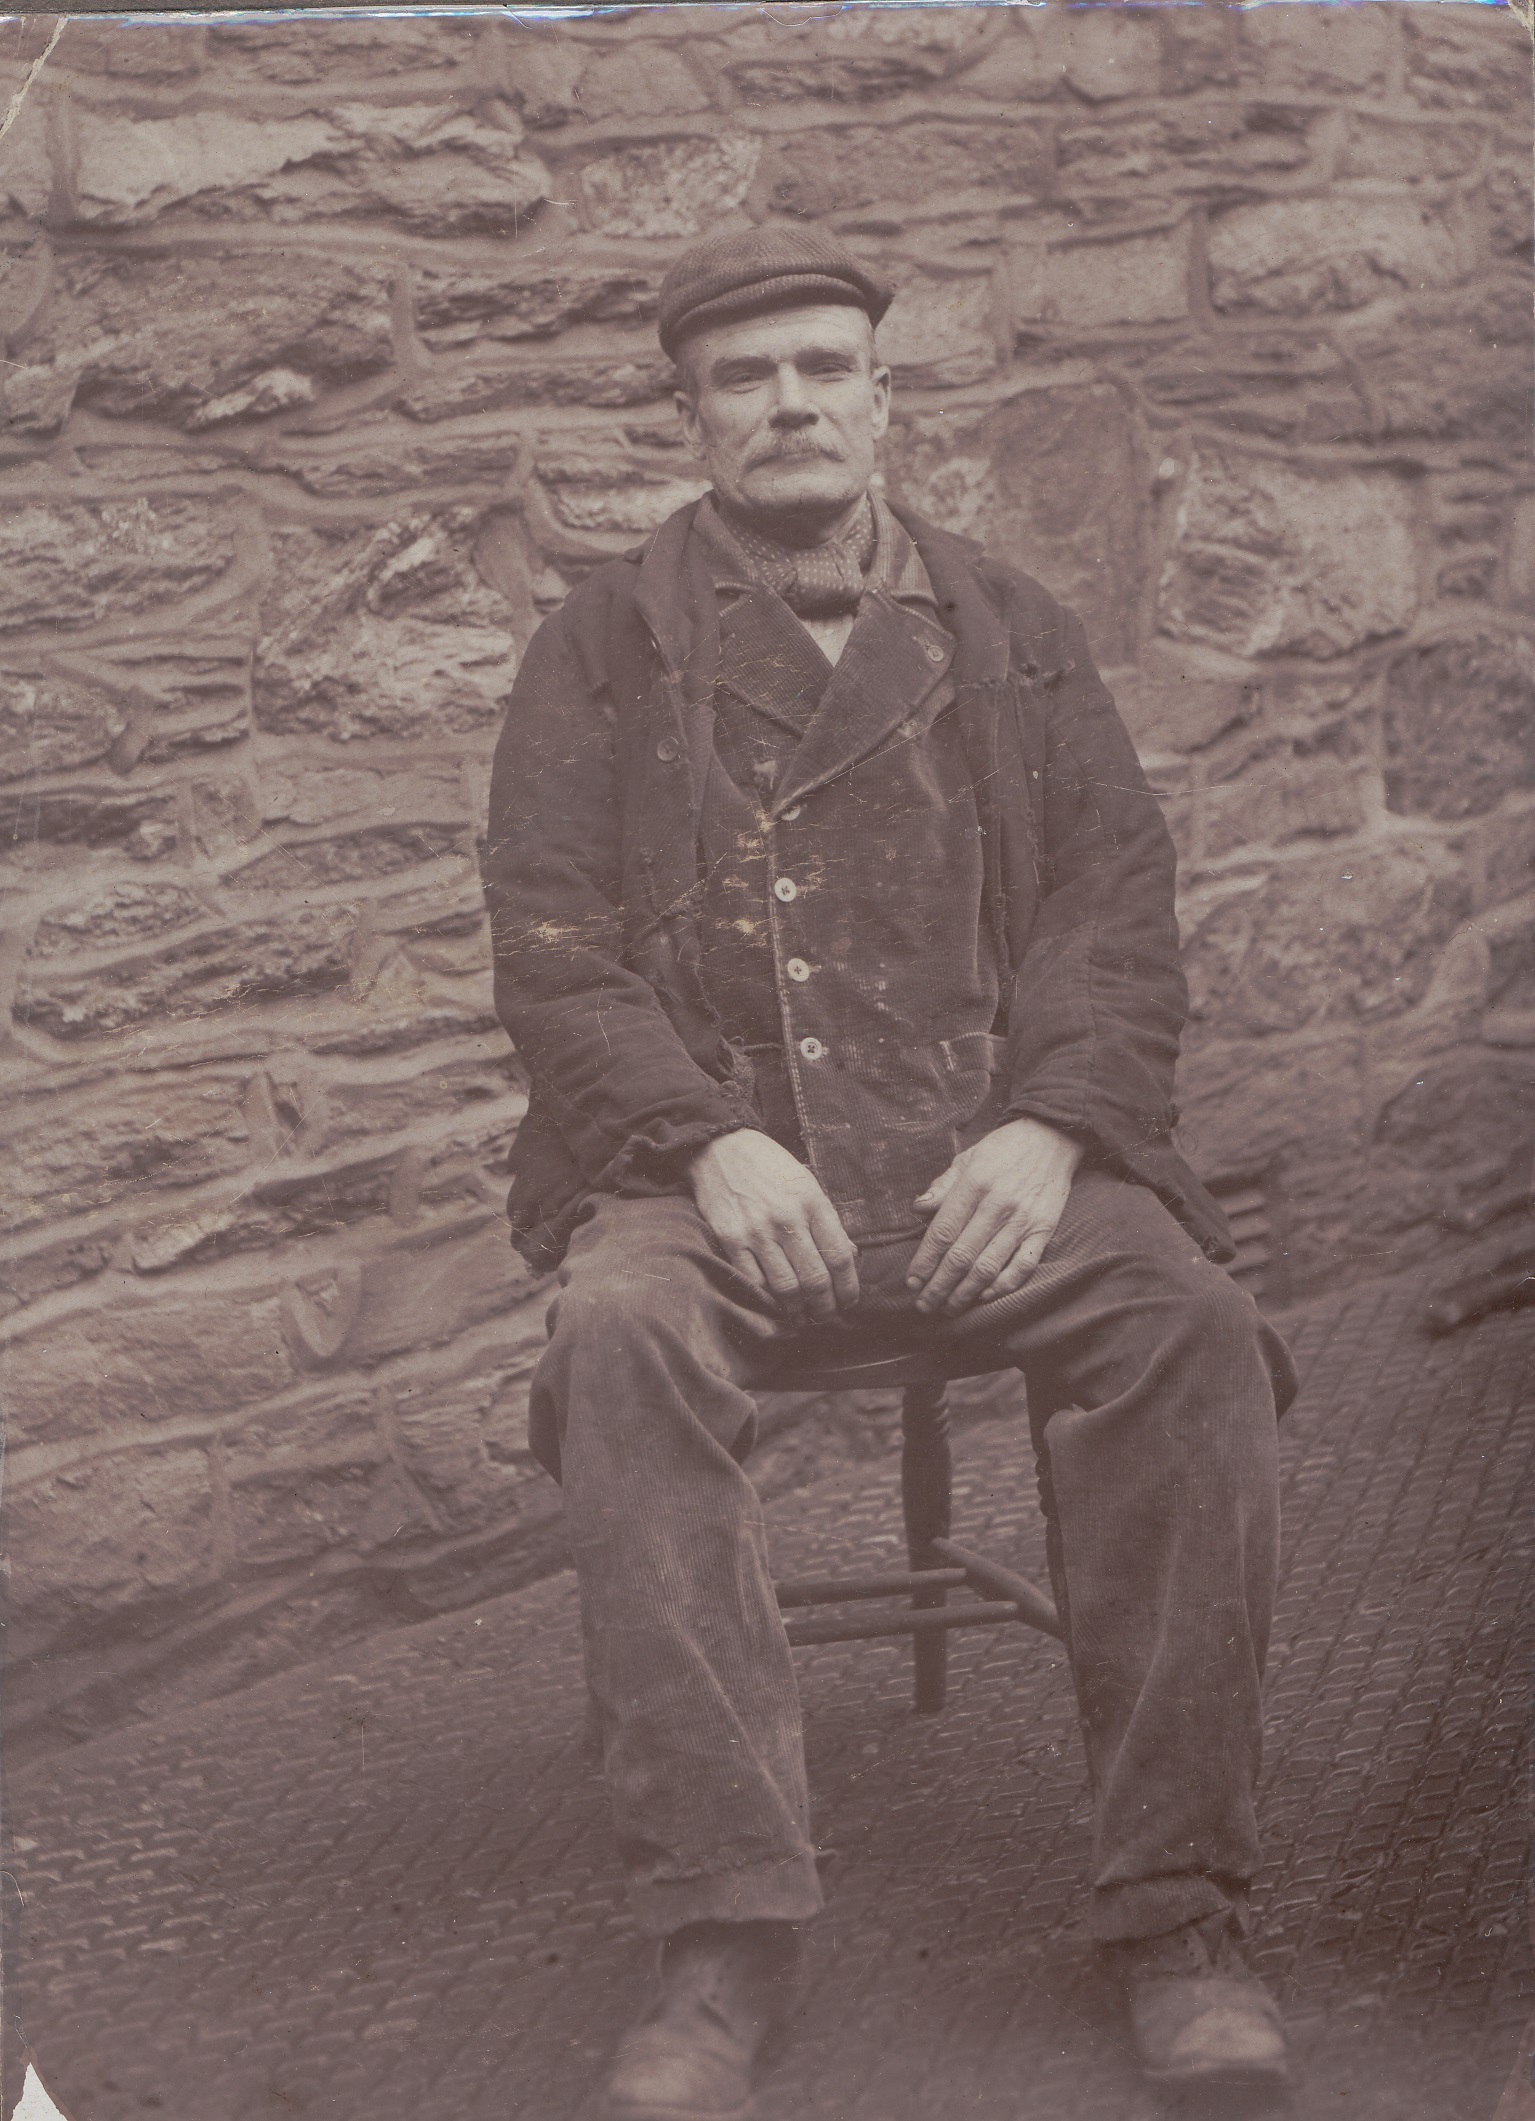 William Murphy hanged in Caernarfon in 1910